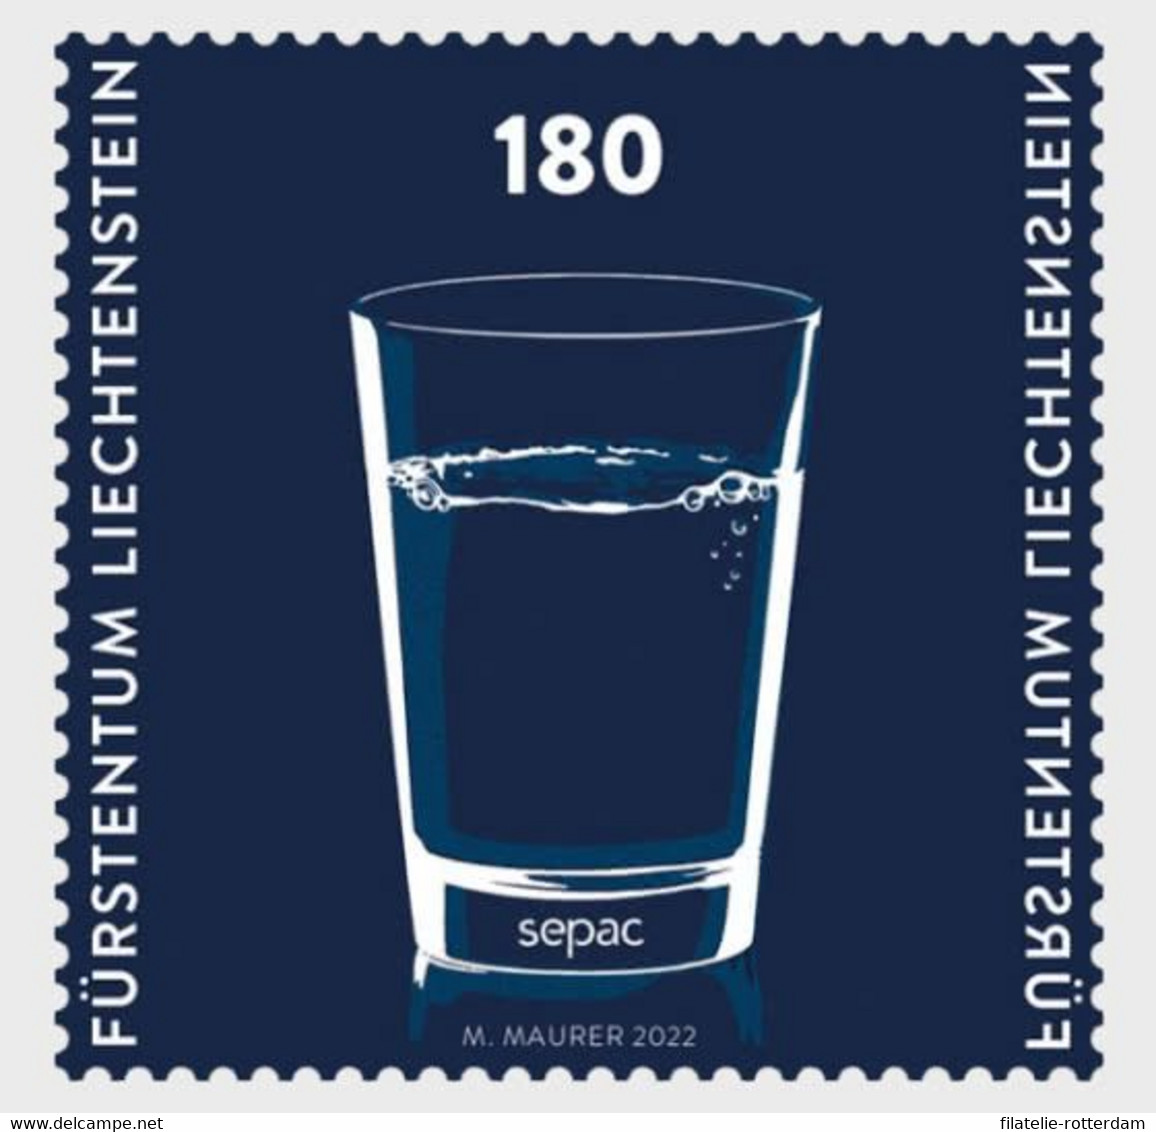 Liechtenstein - Postfris / MNH - SEPAC 2022 - Ongebruikt